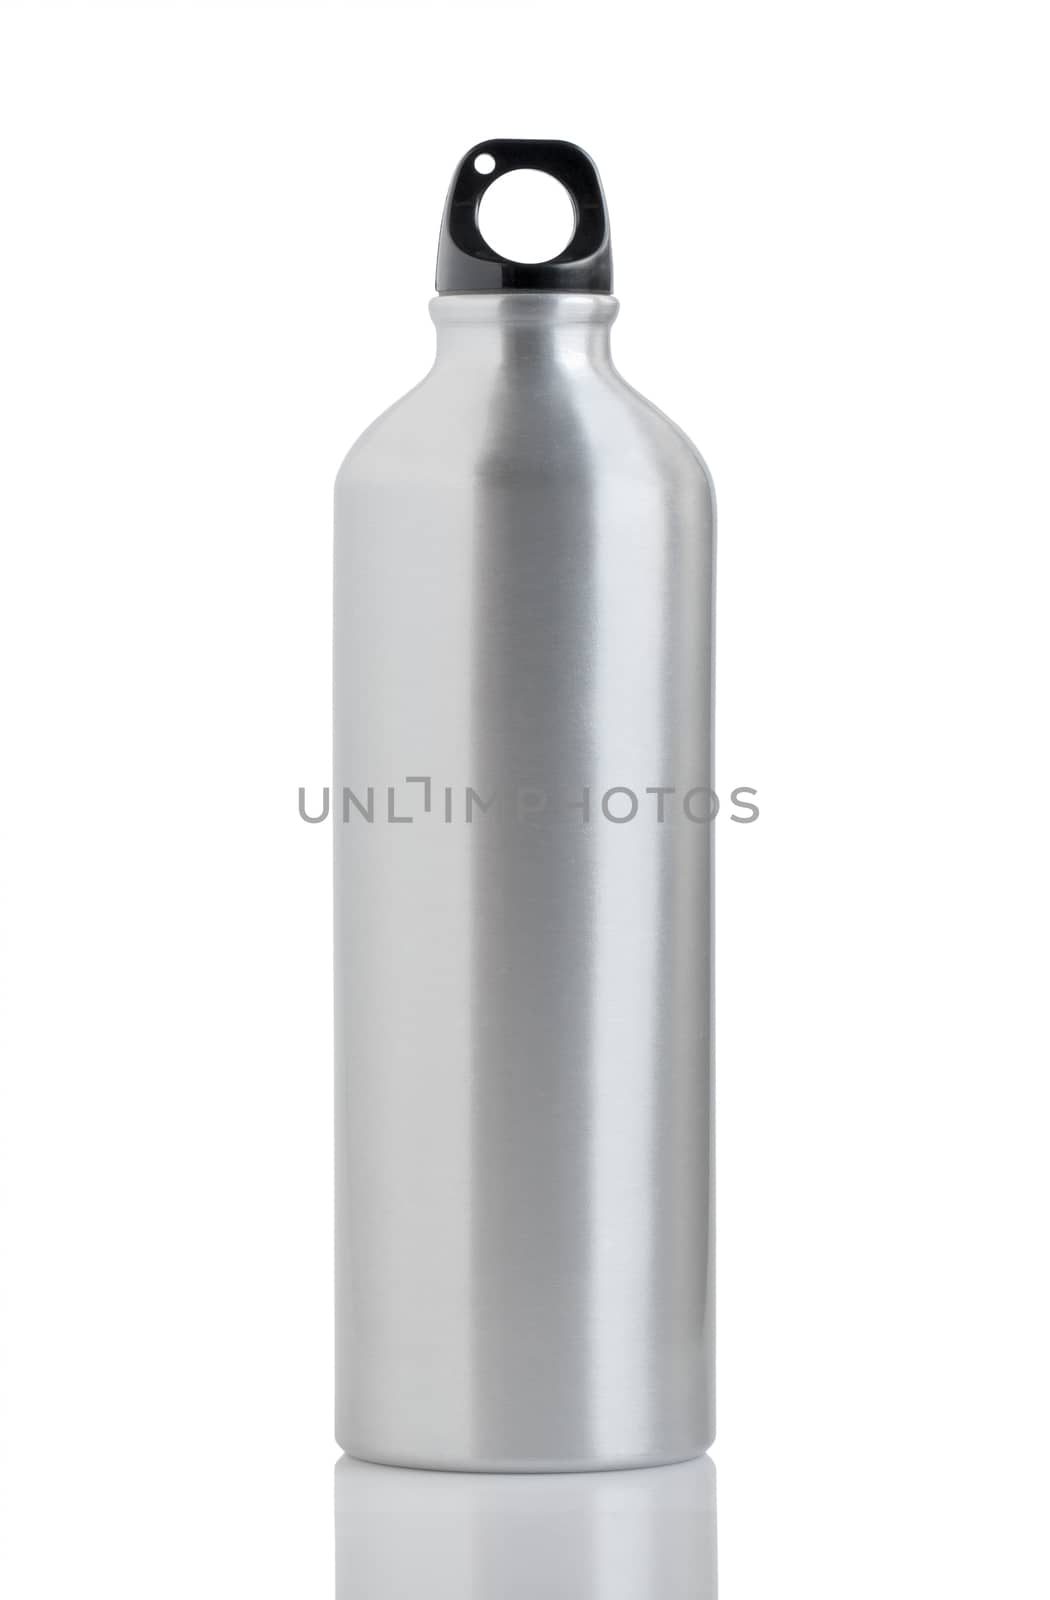 Aluminum bottle water isolated on white background